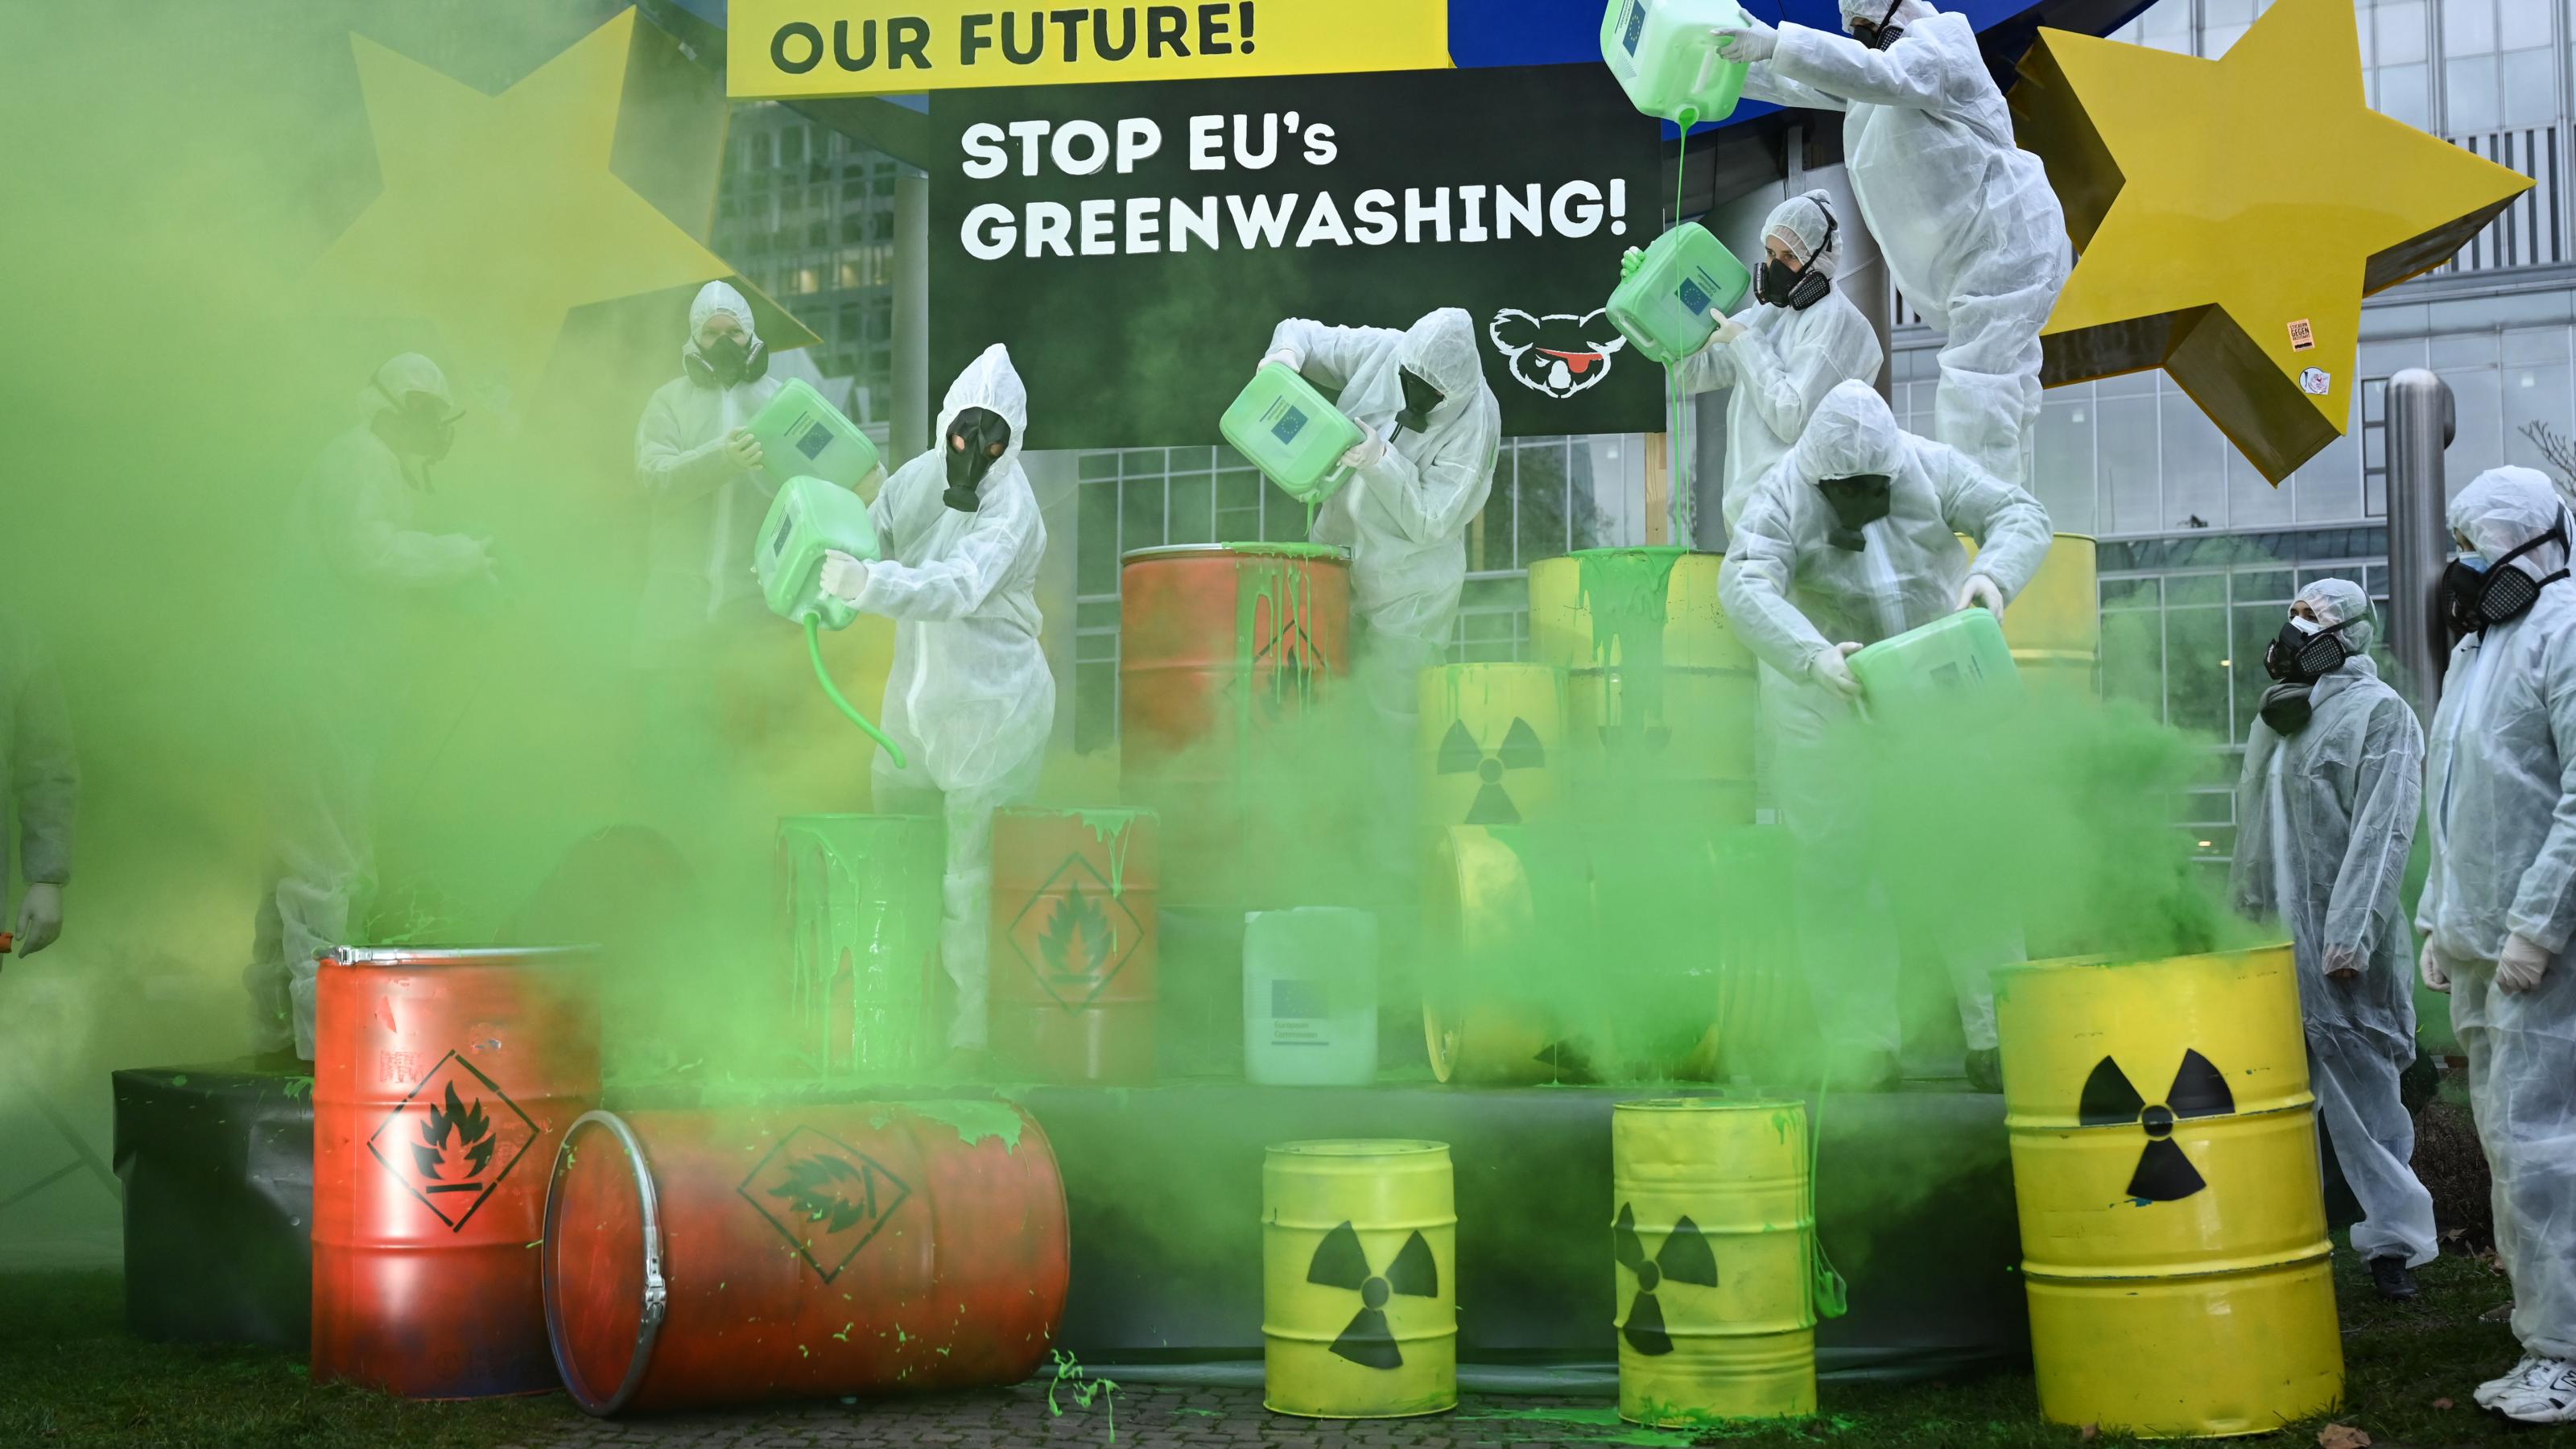 Mit grünem Nebel demonstrieren Aktivisten gegen Greenwashing durch die EU-Taxonomie.